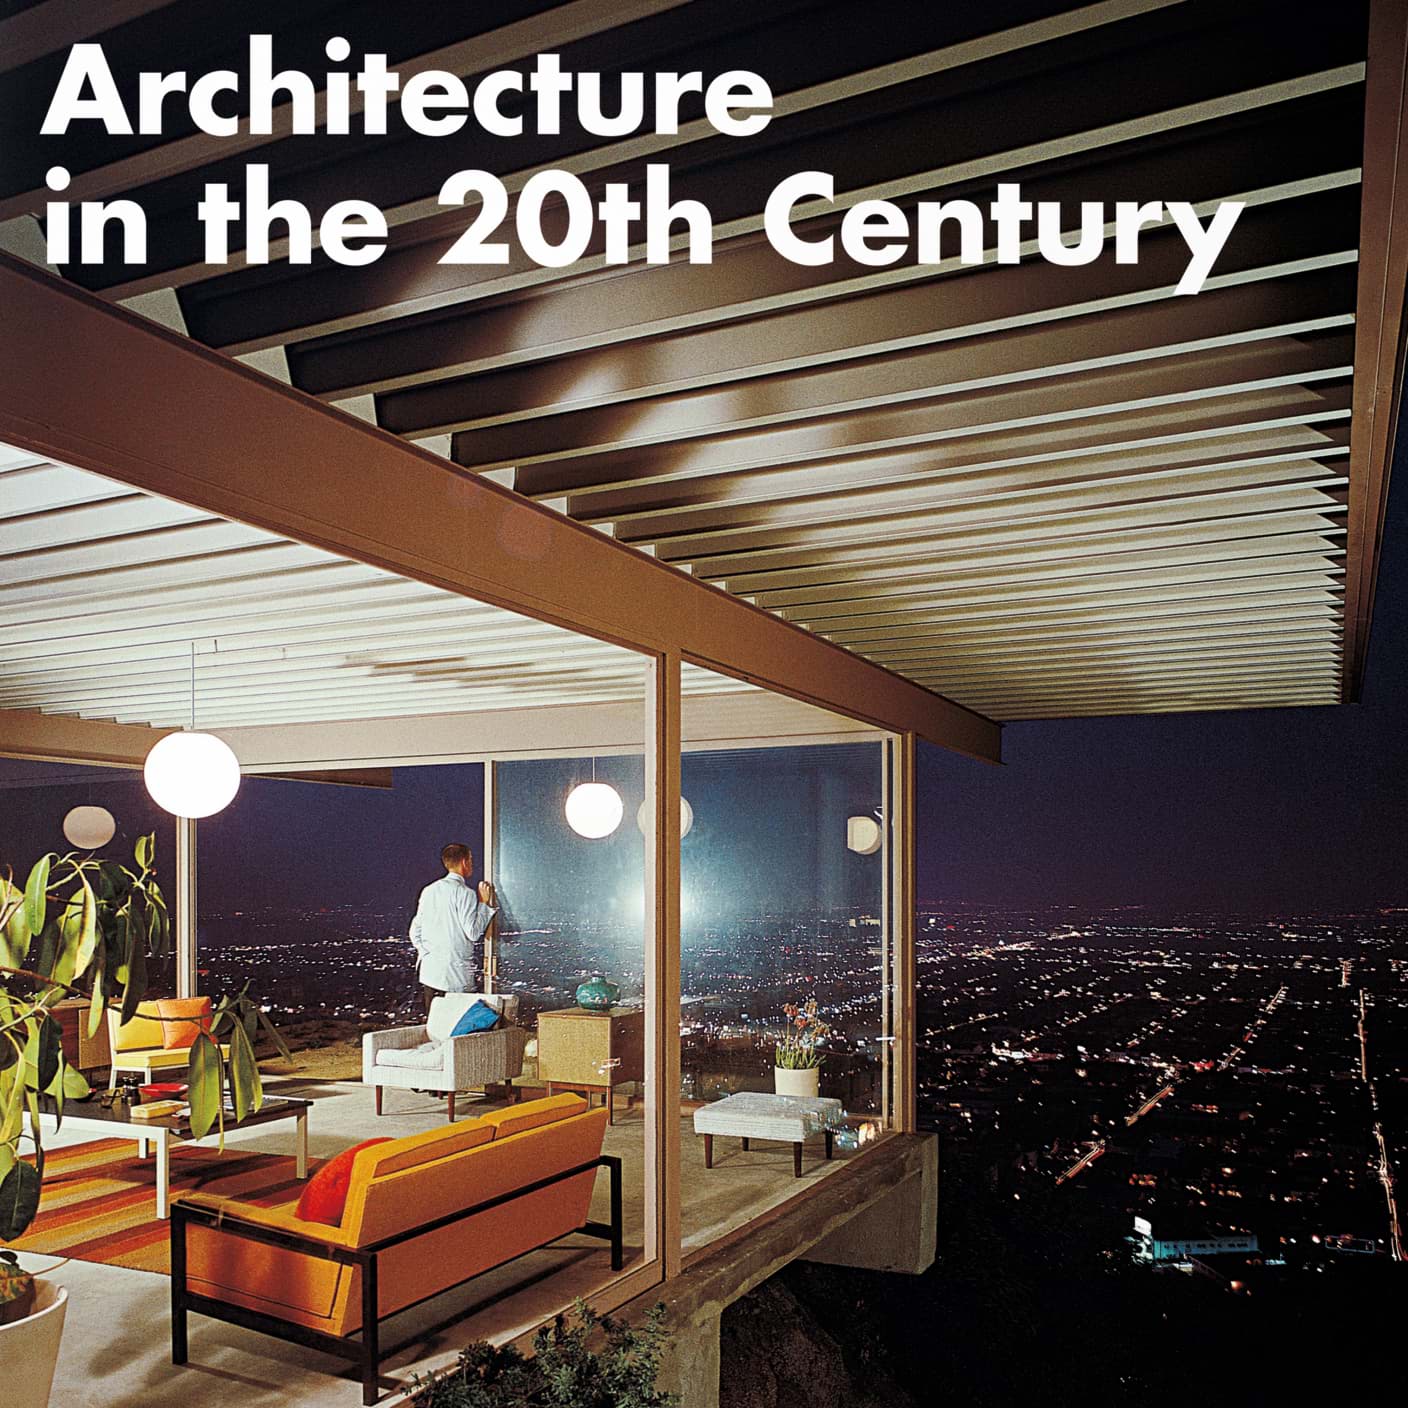 Bild von Architektur des 20. Jahrhunderts